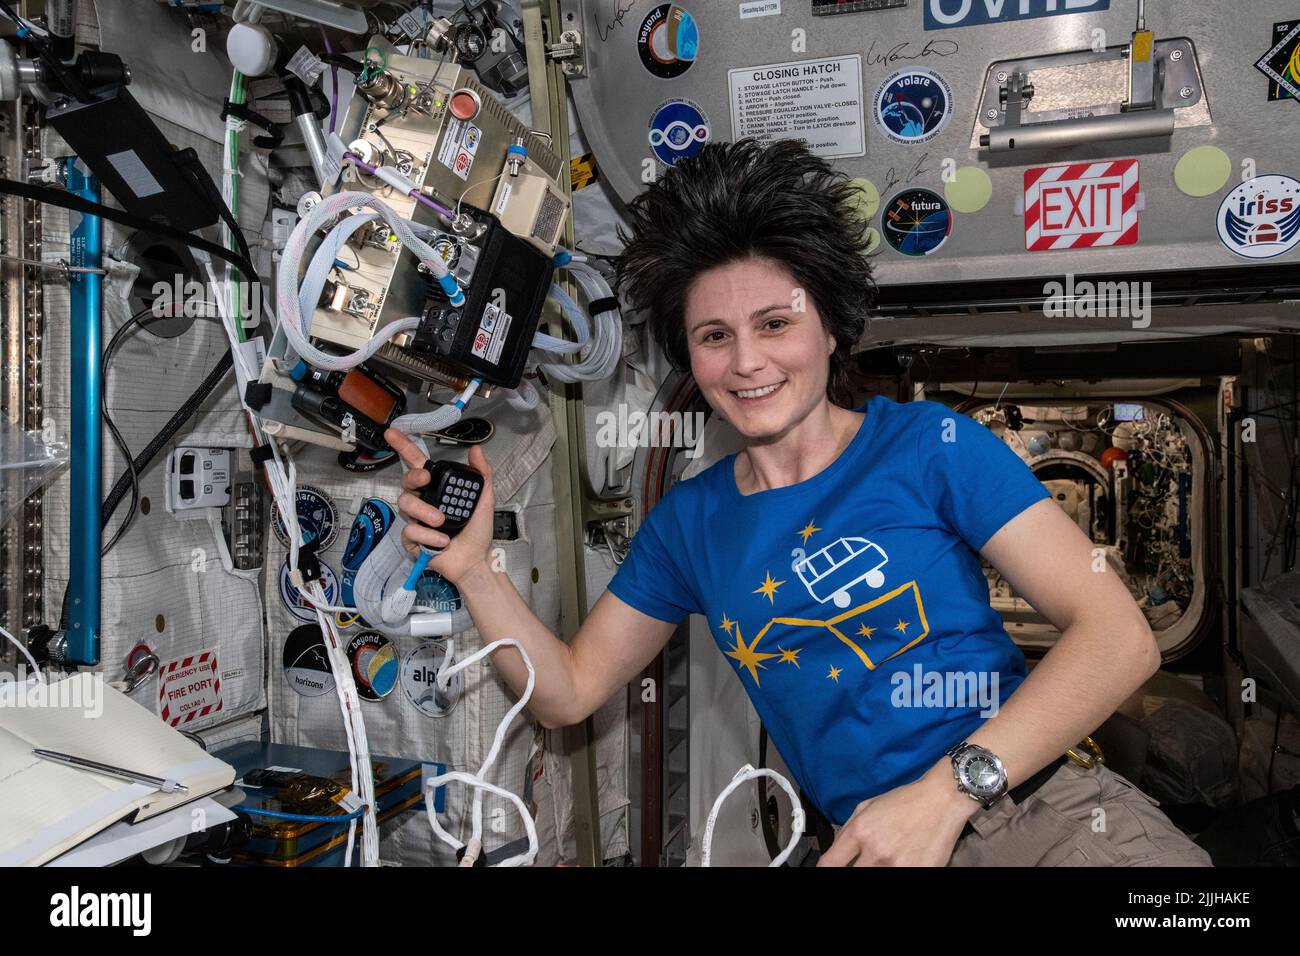 Agenzia spaziale europea astronauta ed Expedition 67 l'ingegnere di volo Samantha Cristoforetti utilizza la radio HAM del laboratorio orbitante per parlare con gli studenti in Italia a bordo della Stazione spaziale Internazionale, 16 luglio 2022 a Earth Orbit. Foto Stock